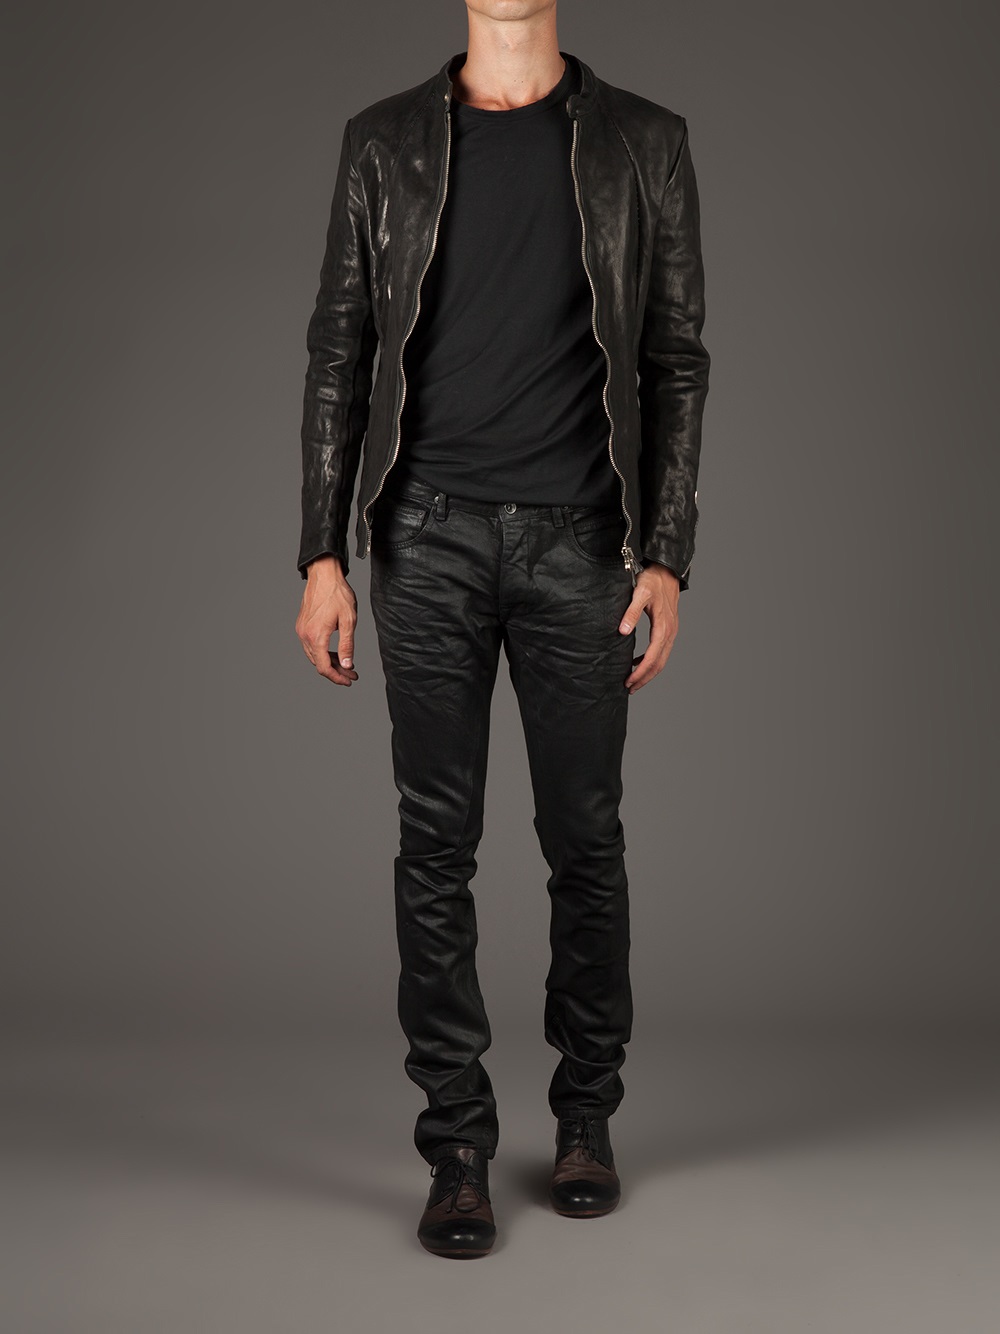 Incarnation Washed Leather Jacket in Black for Men